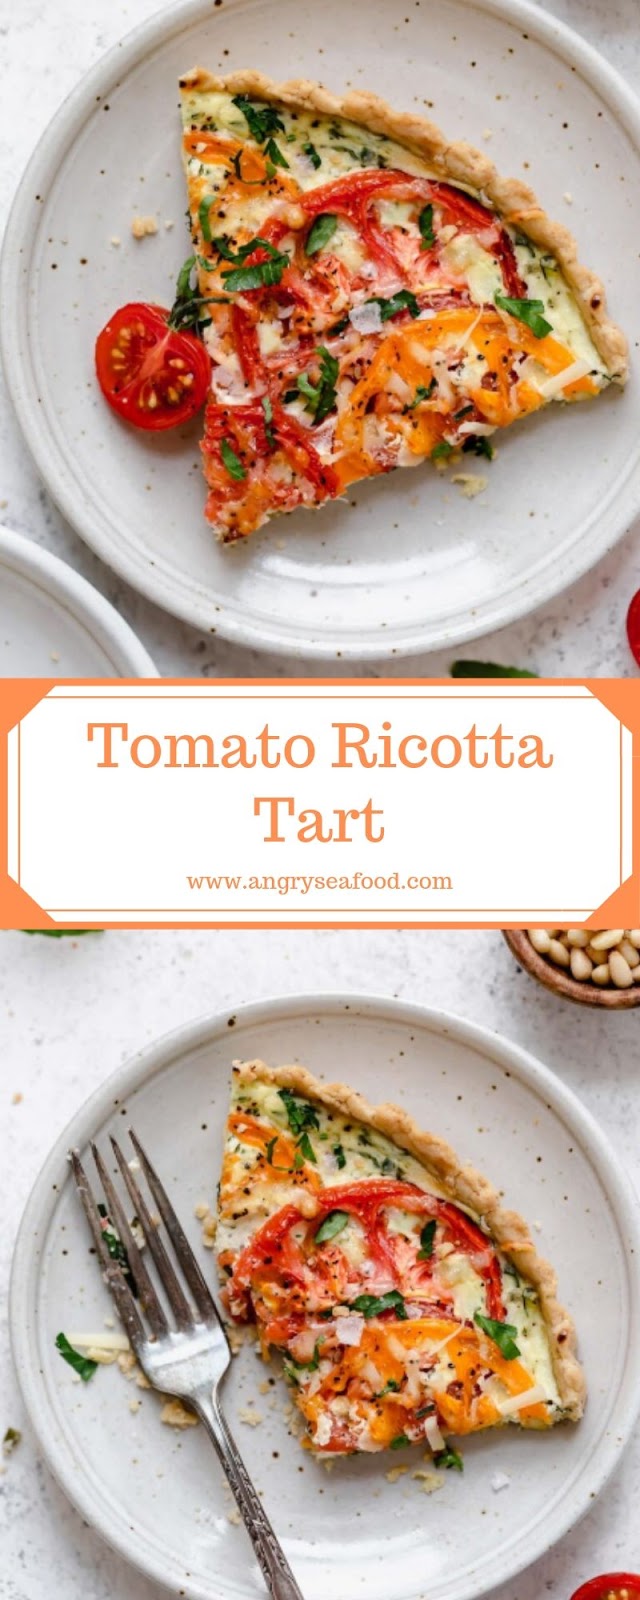 Tomato Ricotta Tart